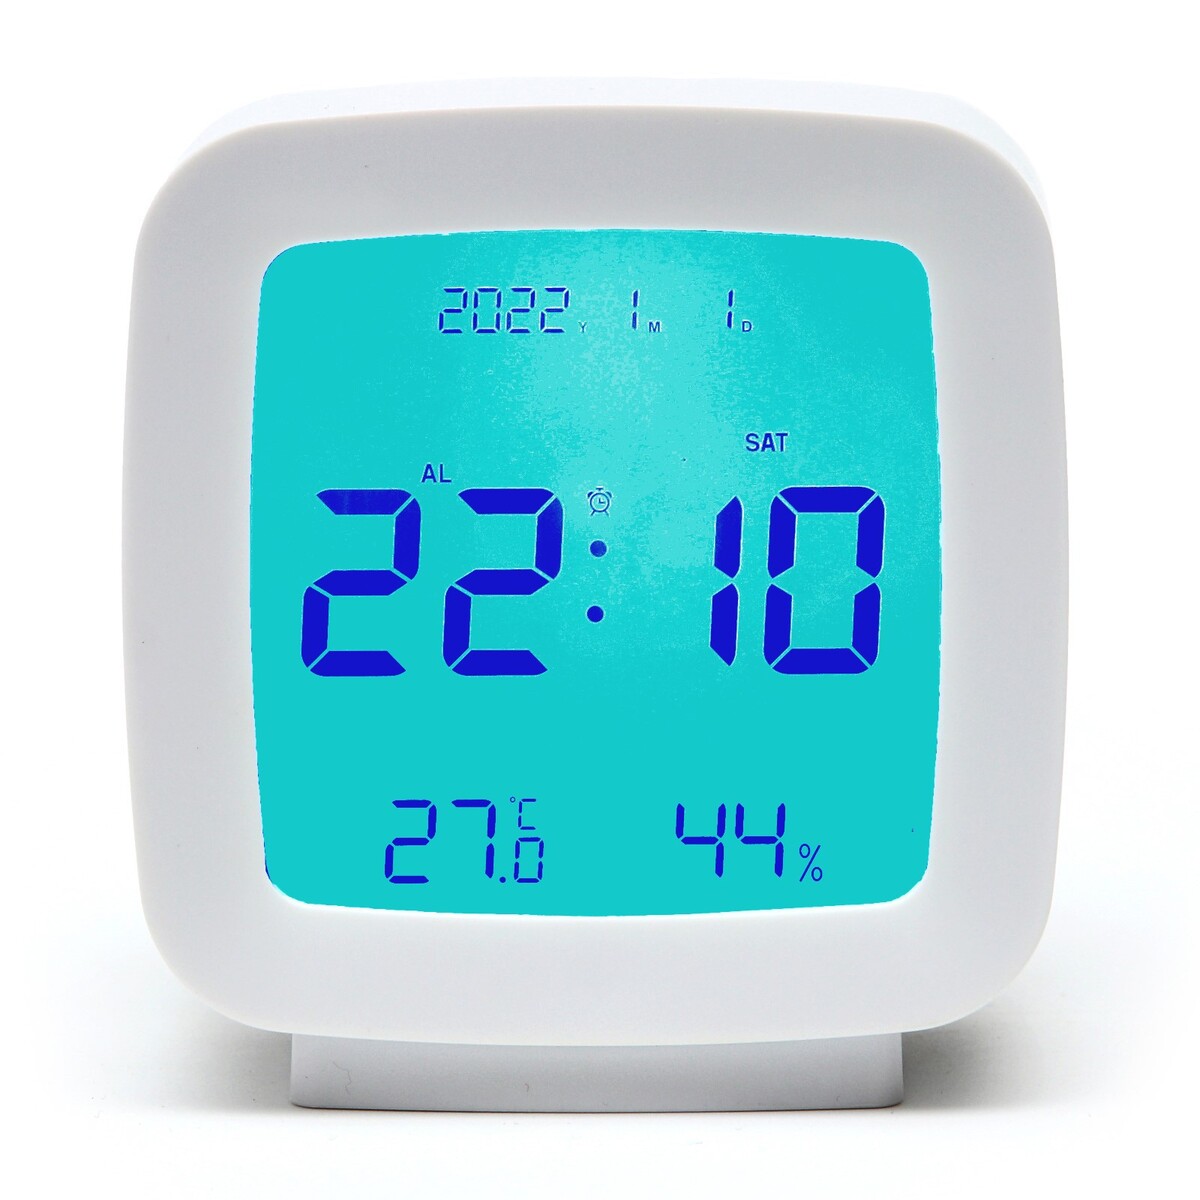 Часы - будильник электронные настольные: термометр, календарь, гигрометр, 7.8 х 8.3 см часы настольные электронные будильник термометр календарь usb 15х6 3 см красные цифры